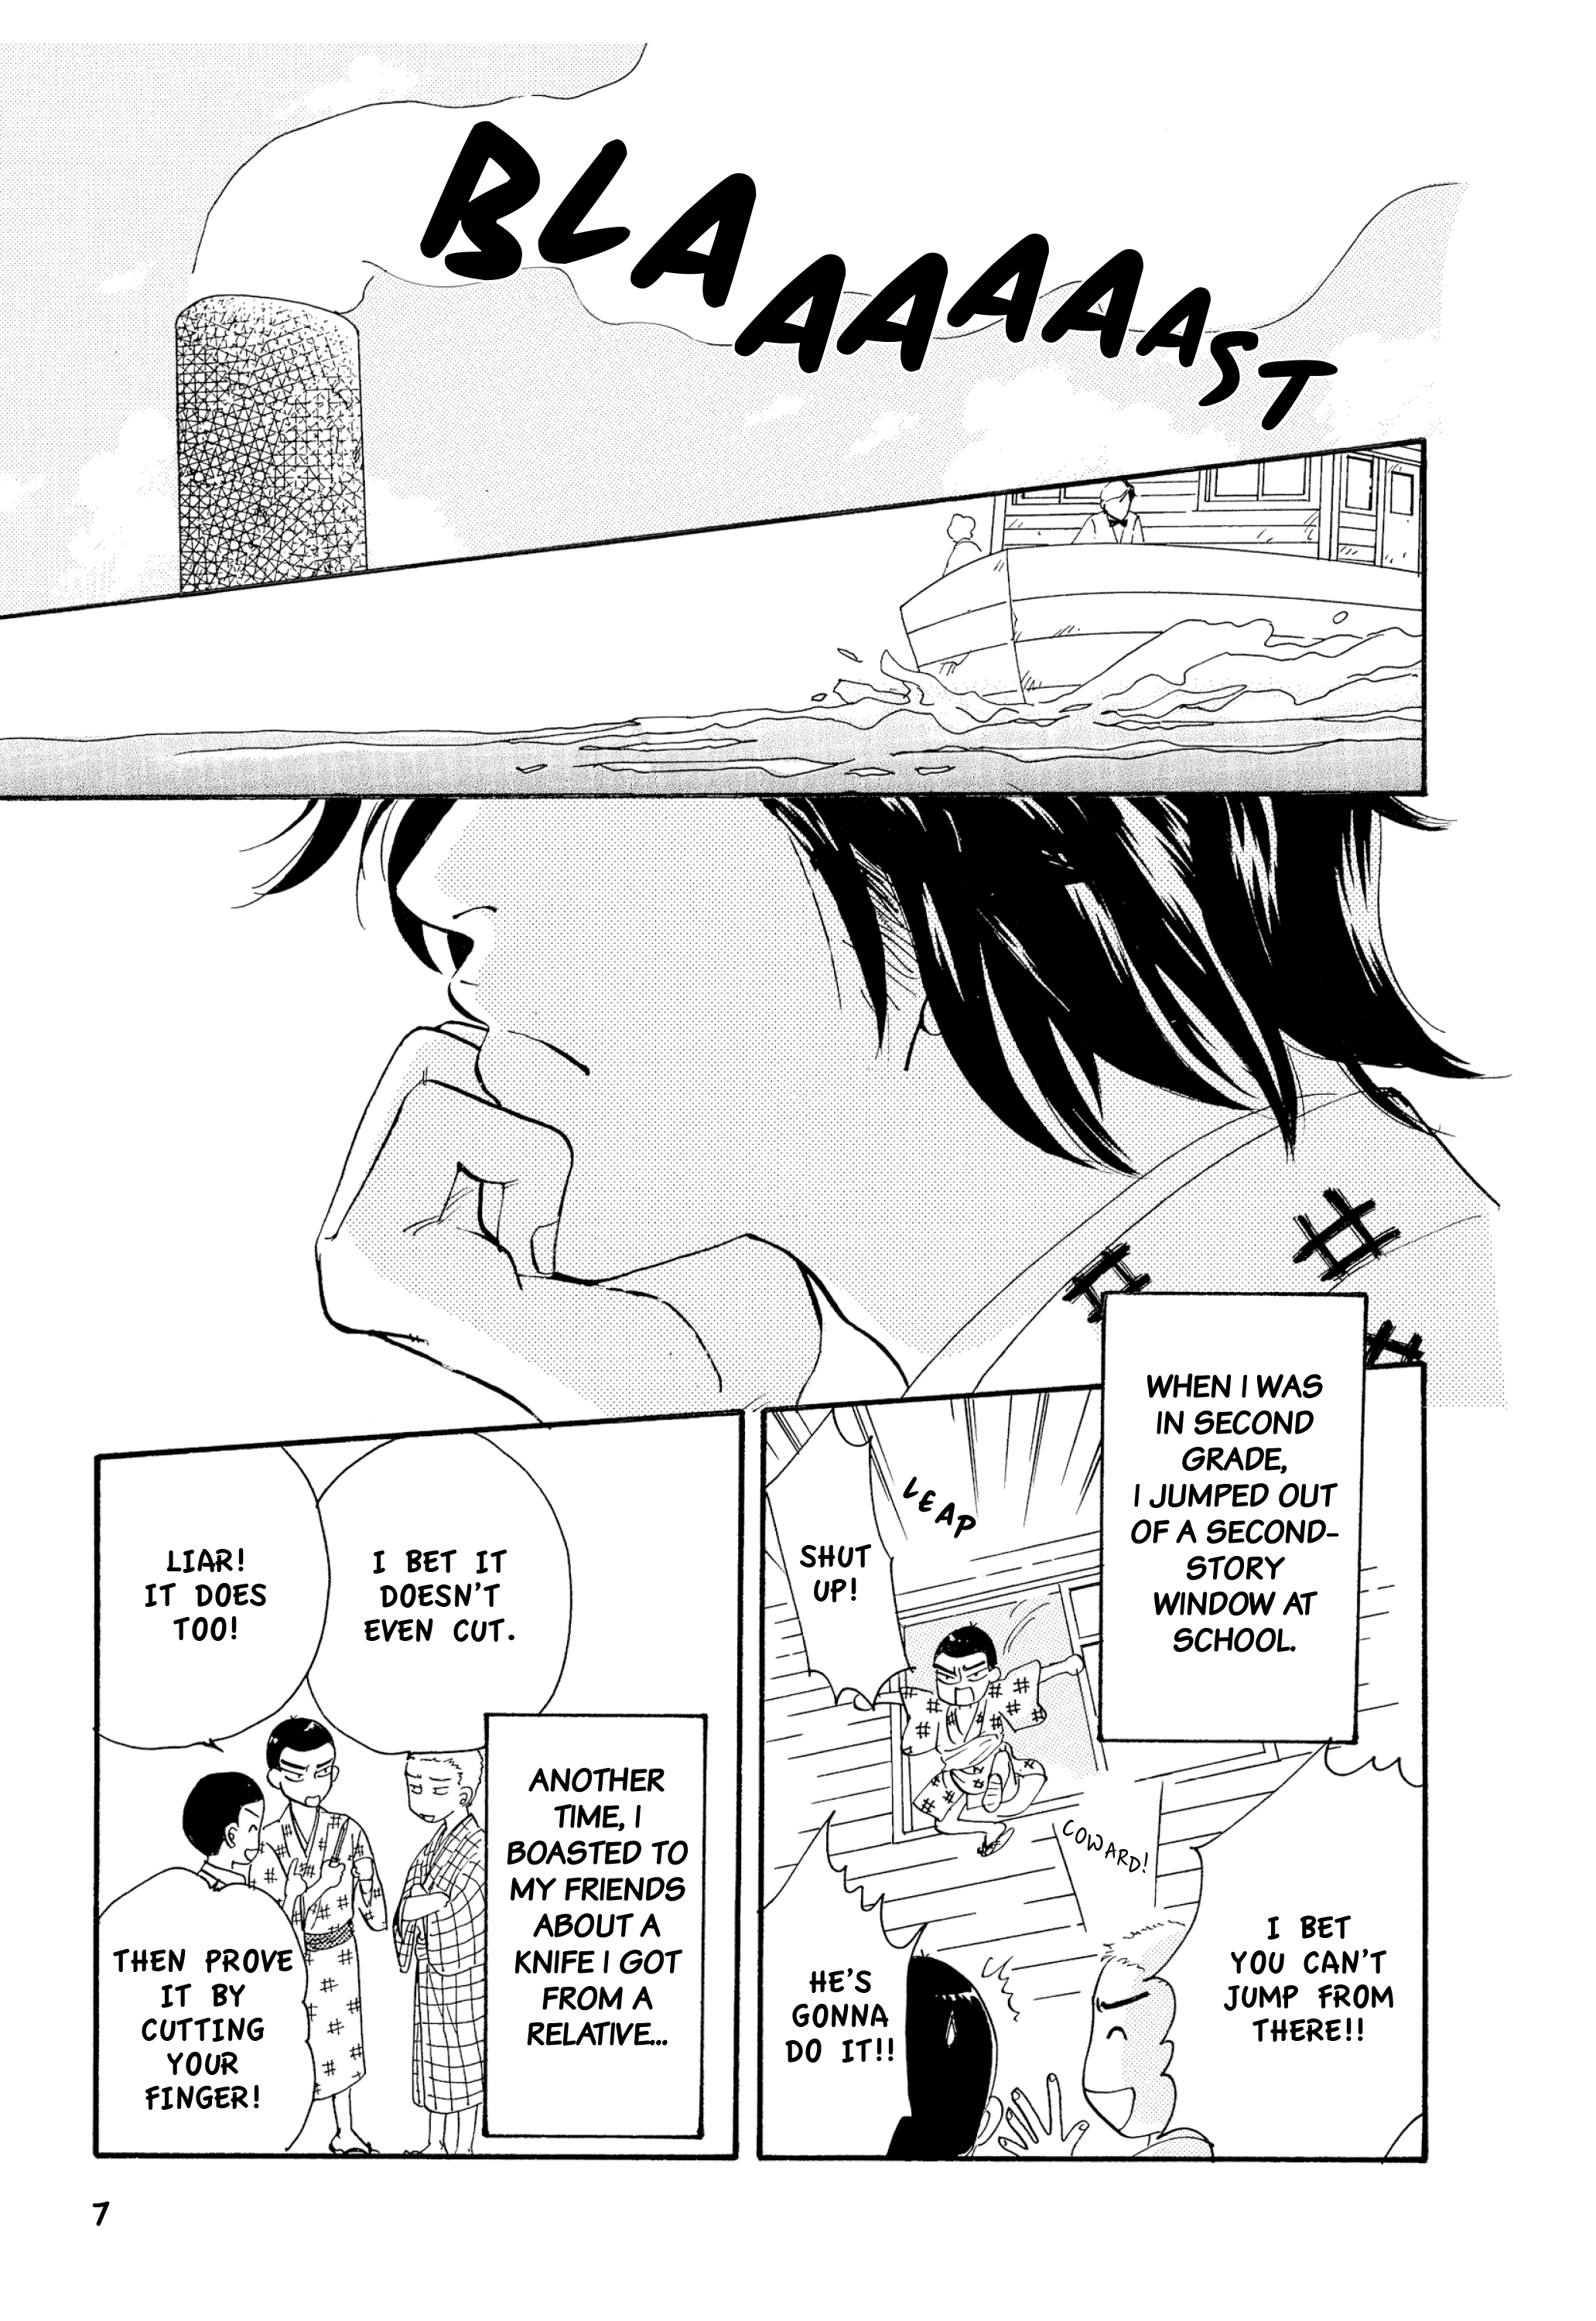 Soseki Natsume's Botchan: The Manga Edition